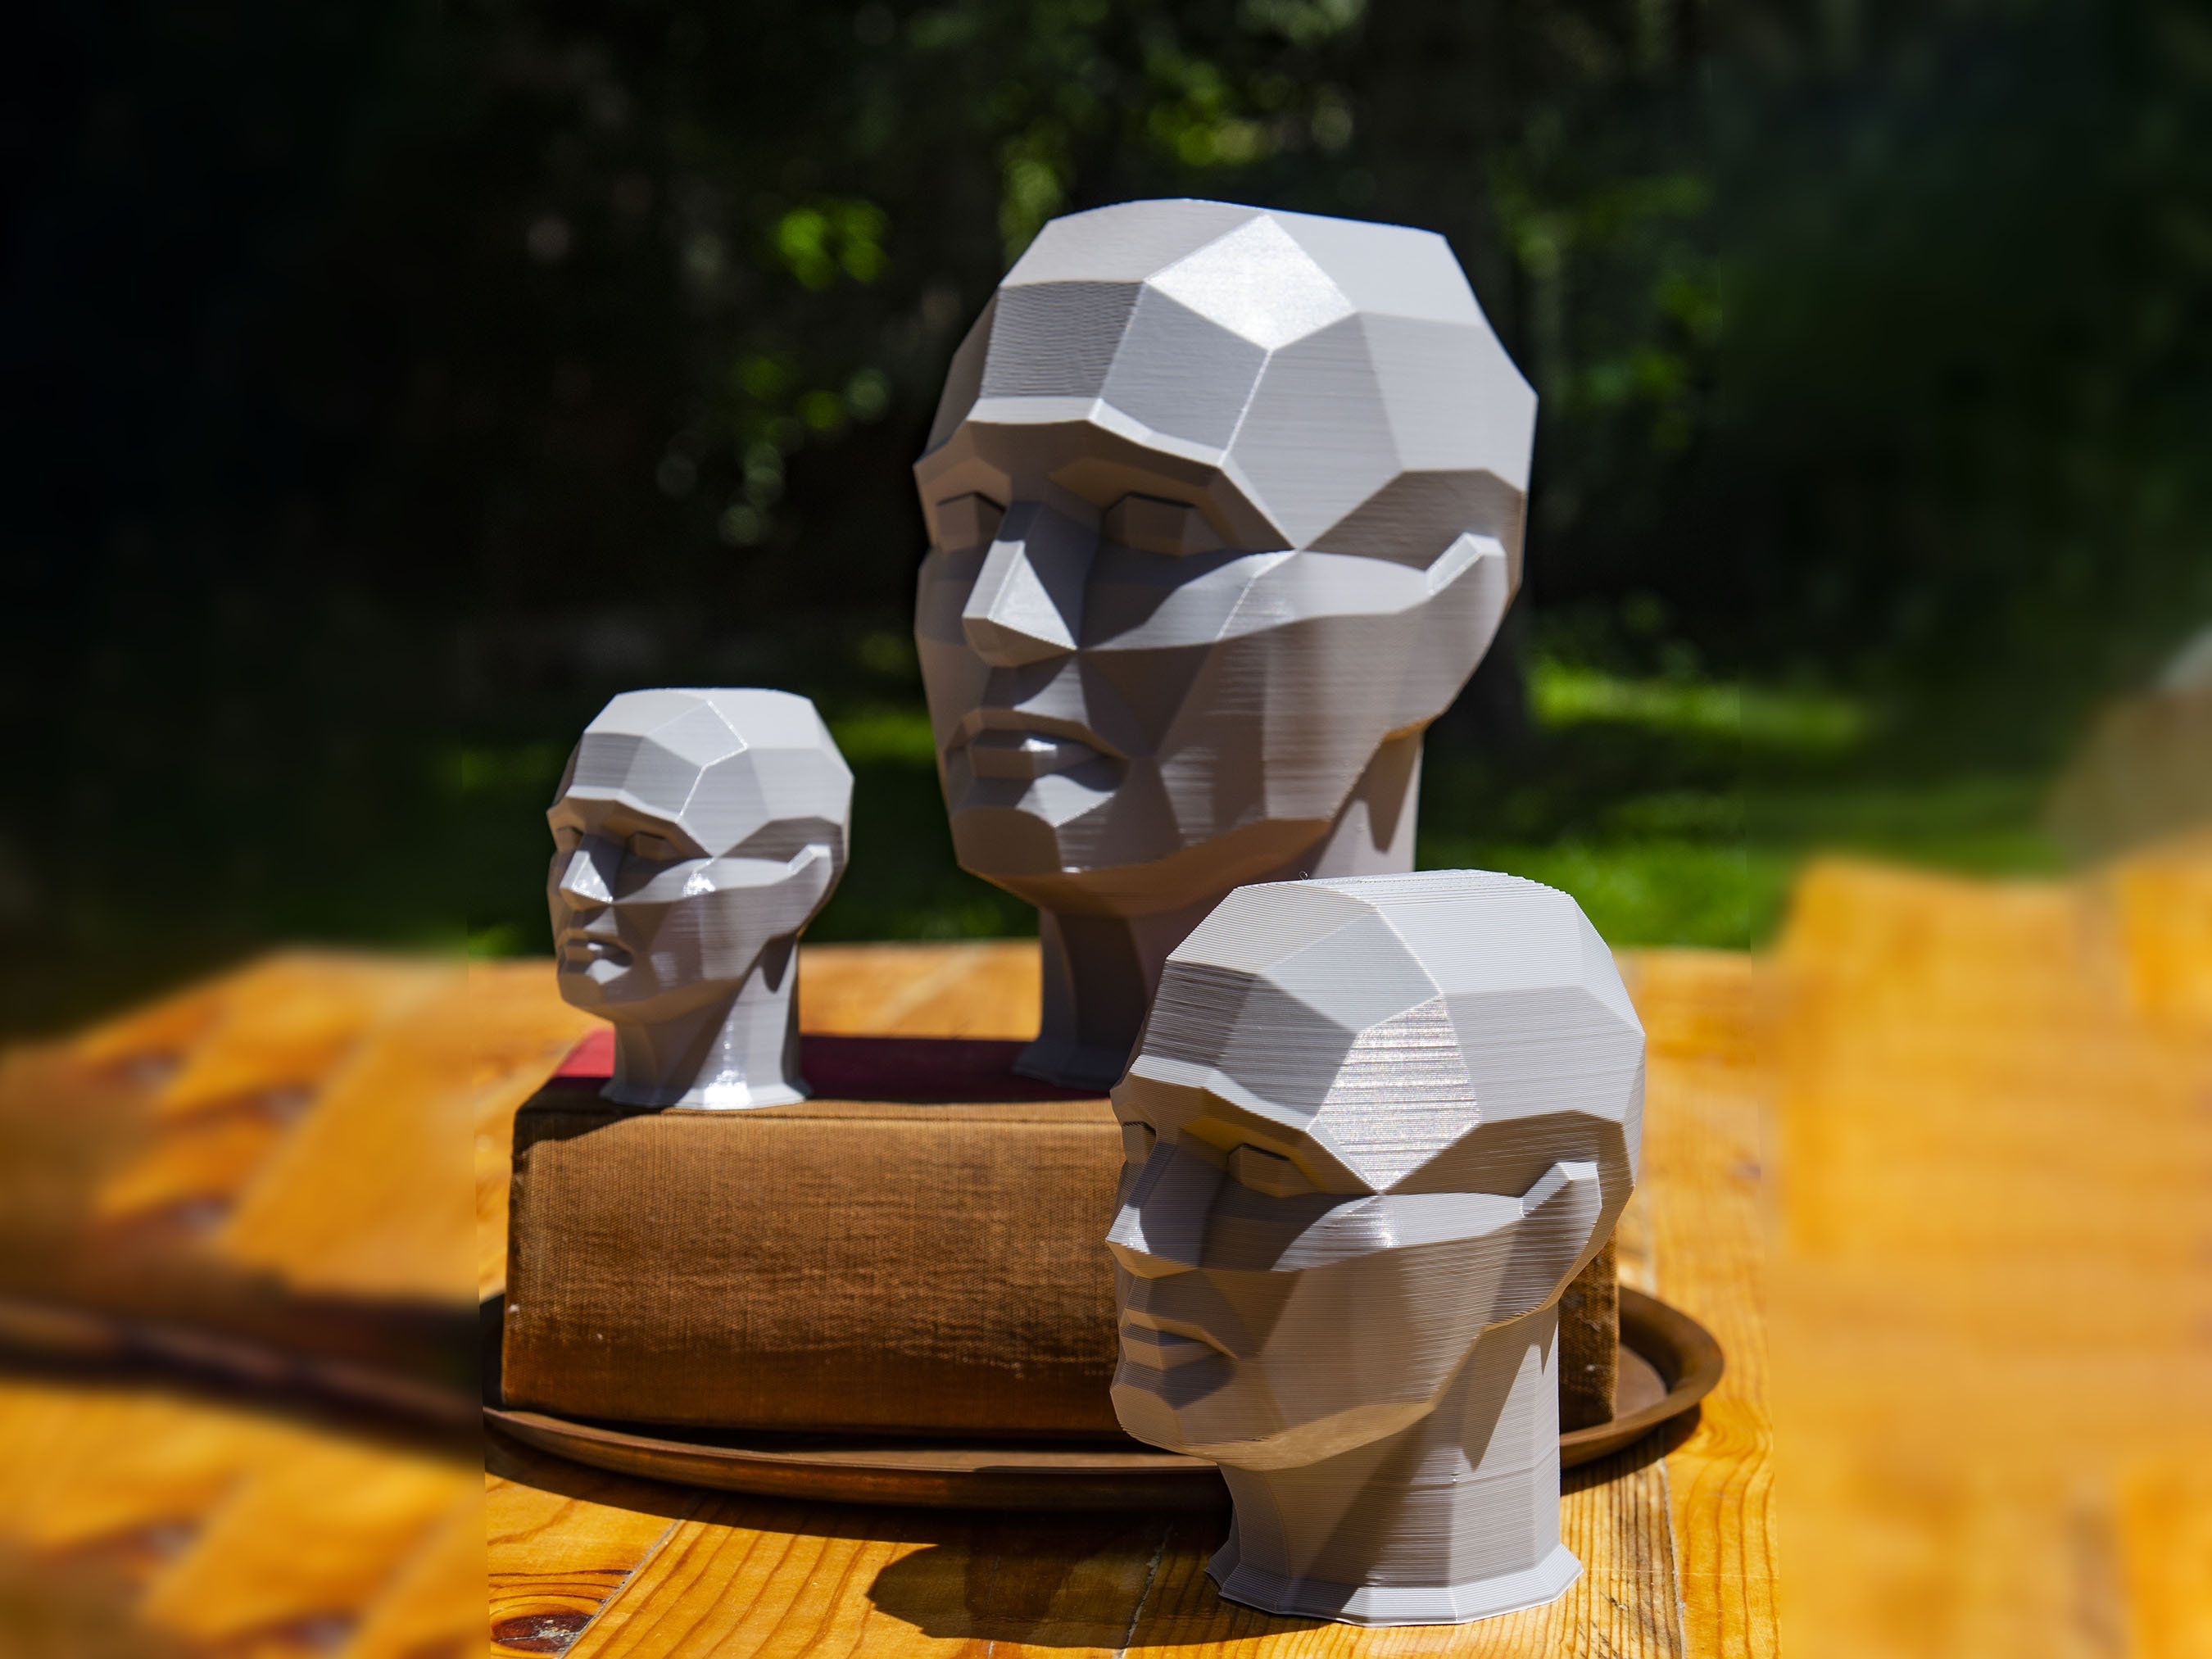 Papercraft visage humain 3d. Sculpture abstraite géométrique